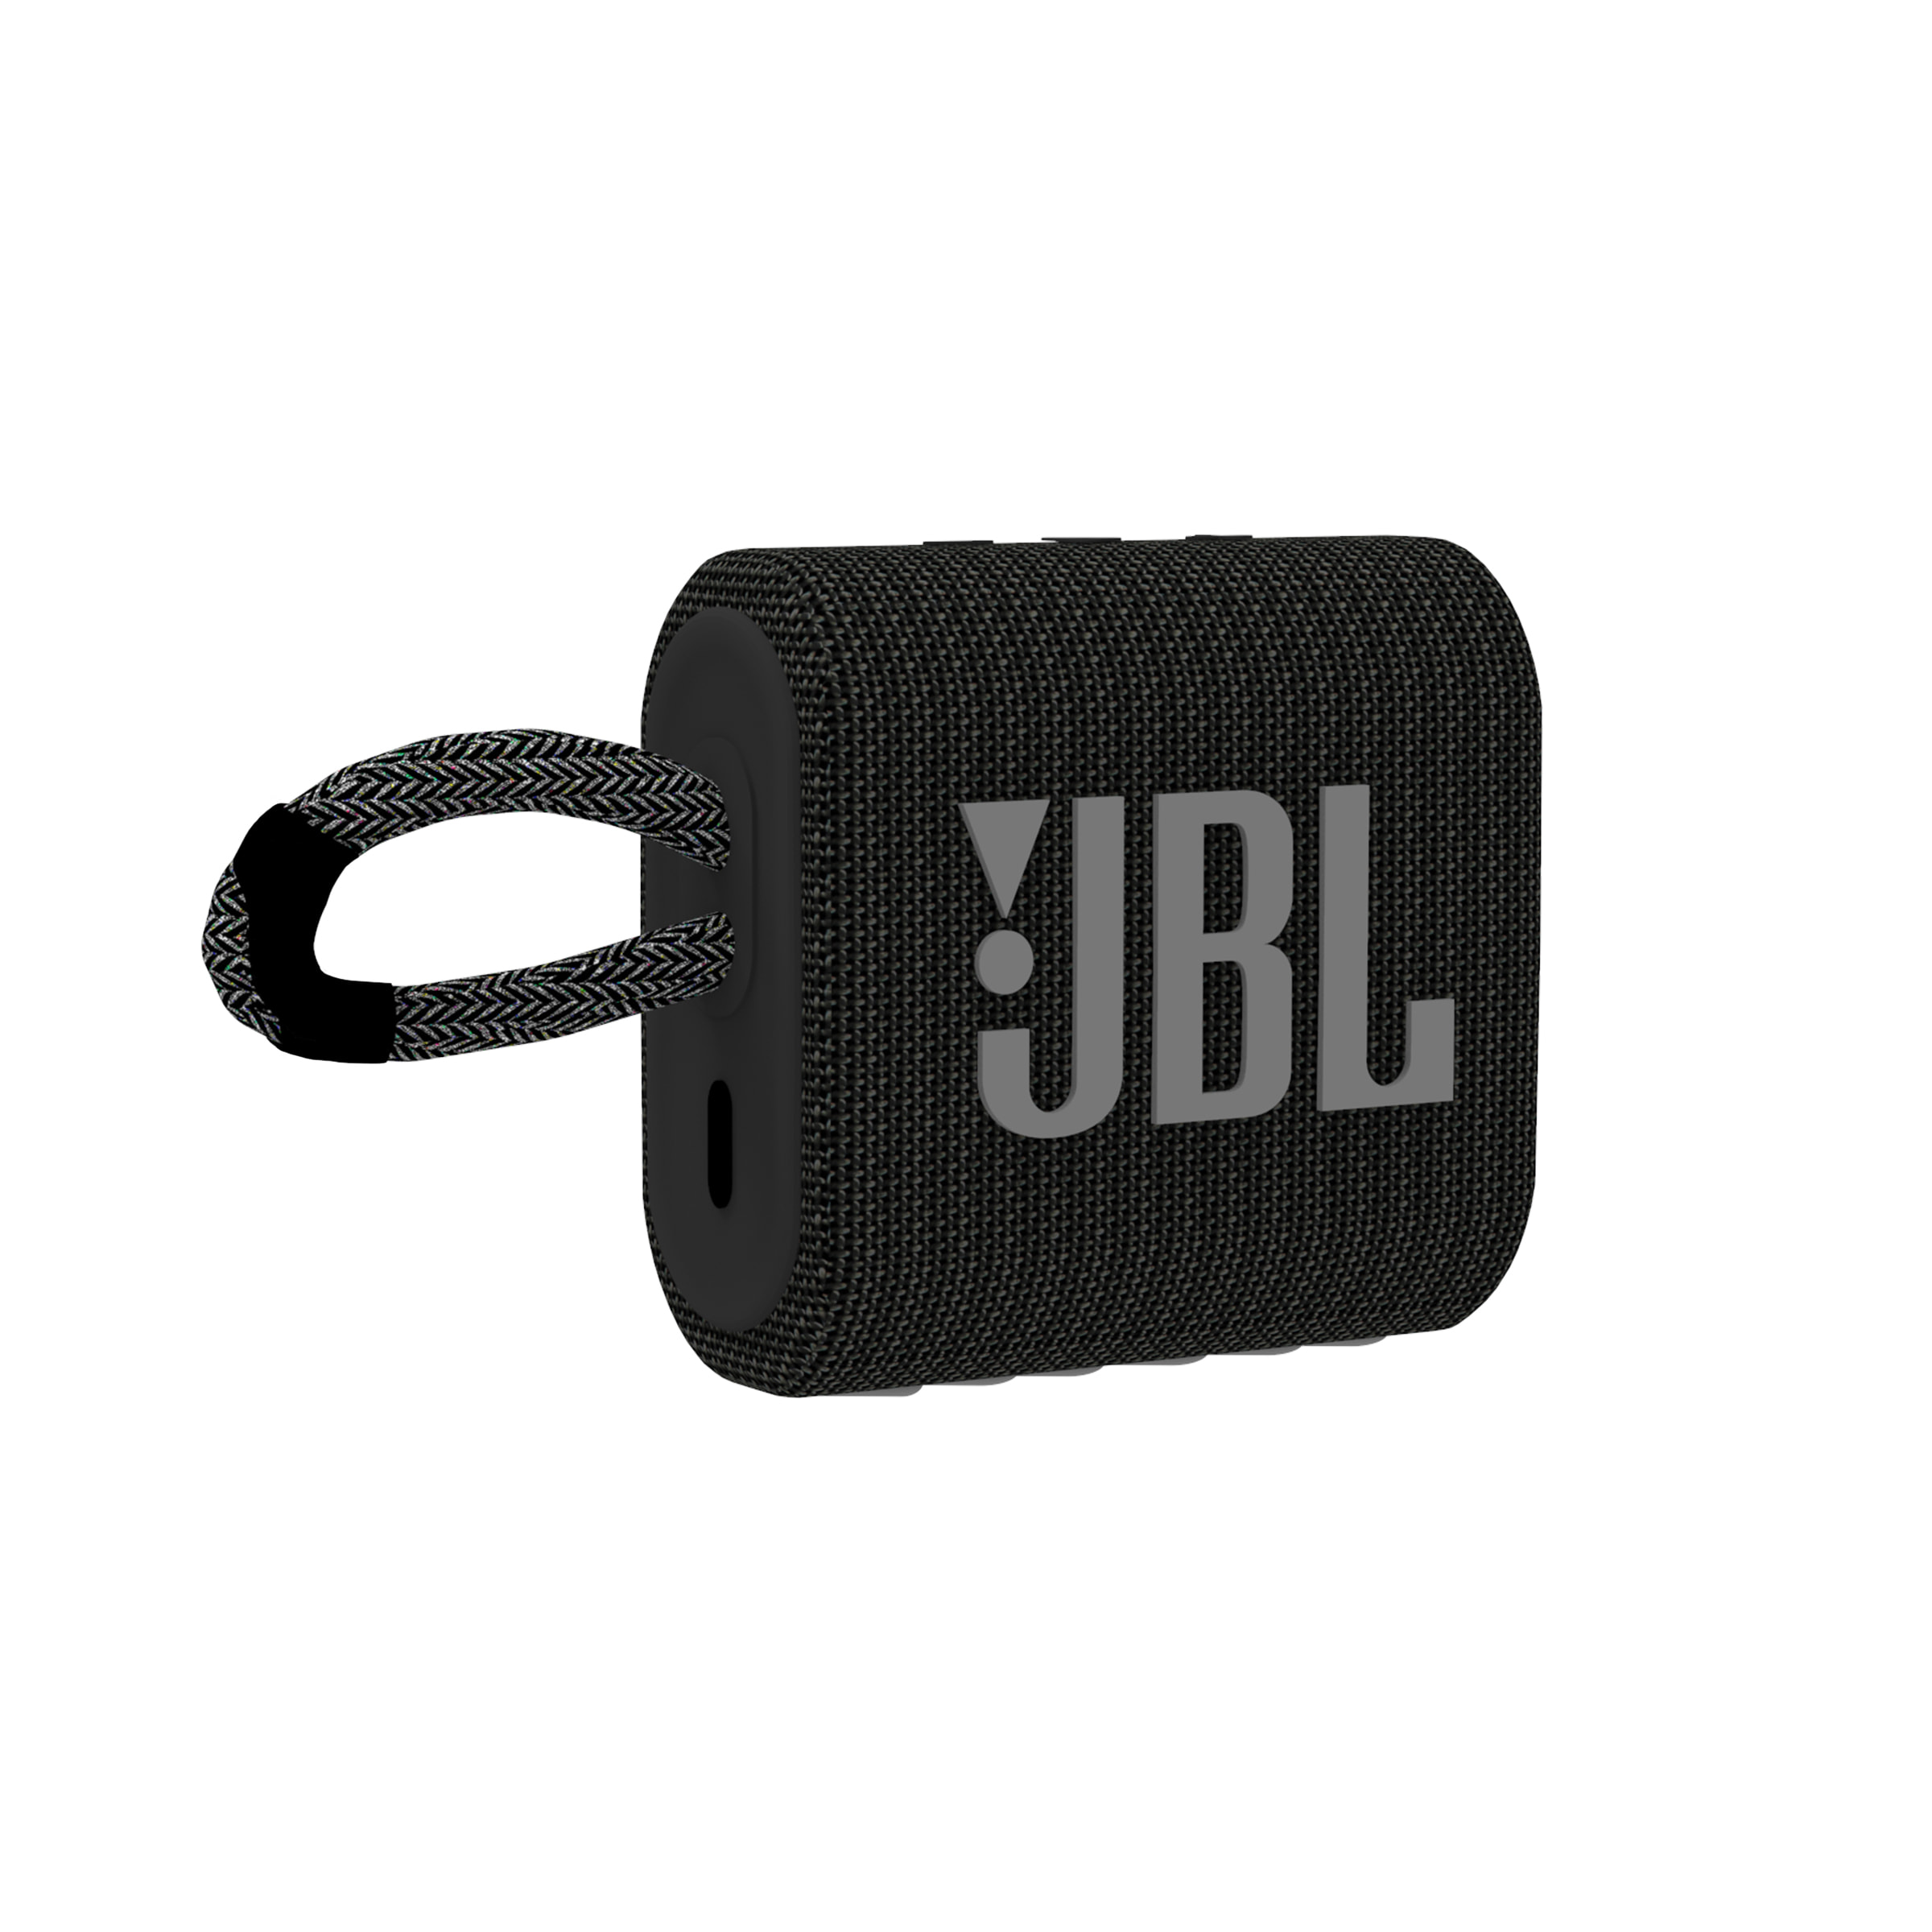 Nombre del fichero: JBL-GO3-black-1.jpg
Dimensiones: 2400 x 2400 píxeles
Tamaño del fichero: 346.35 KB